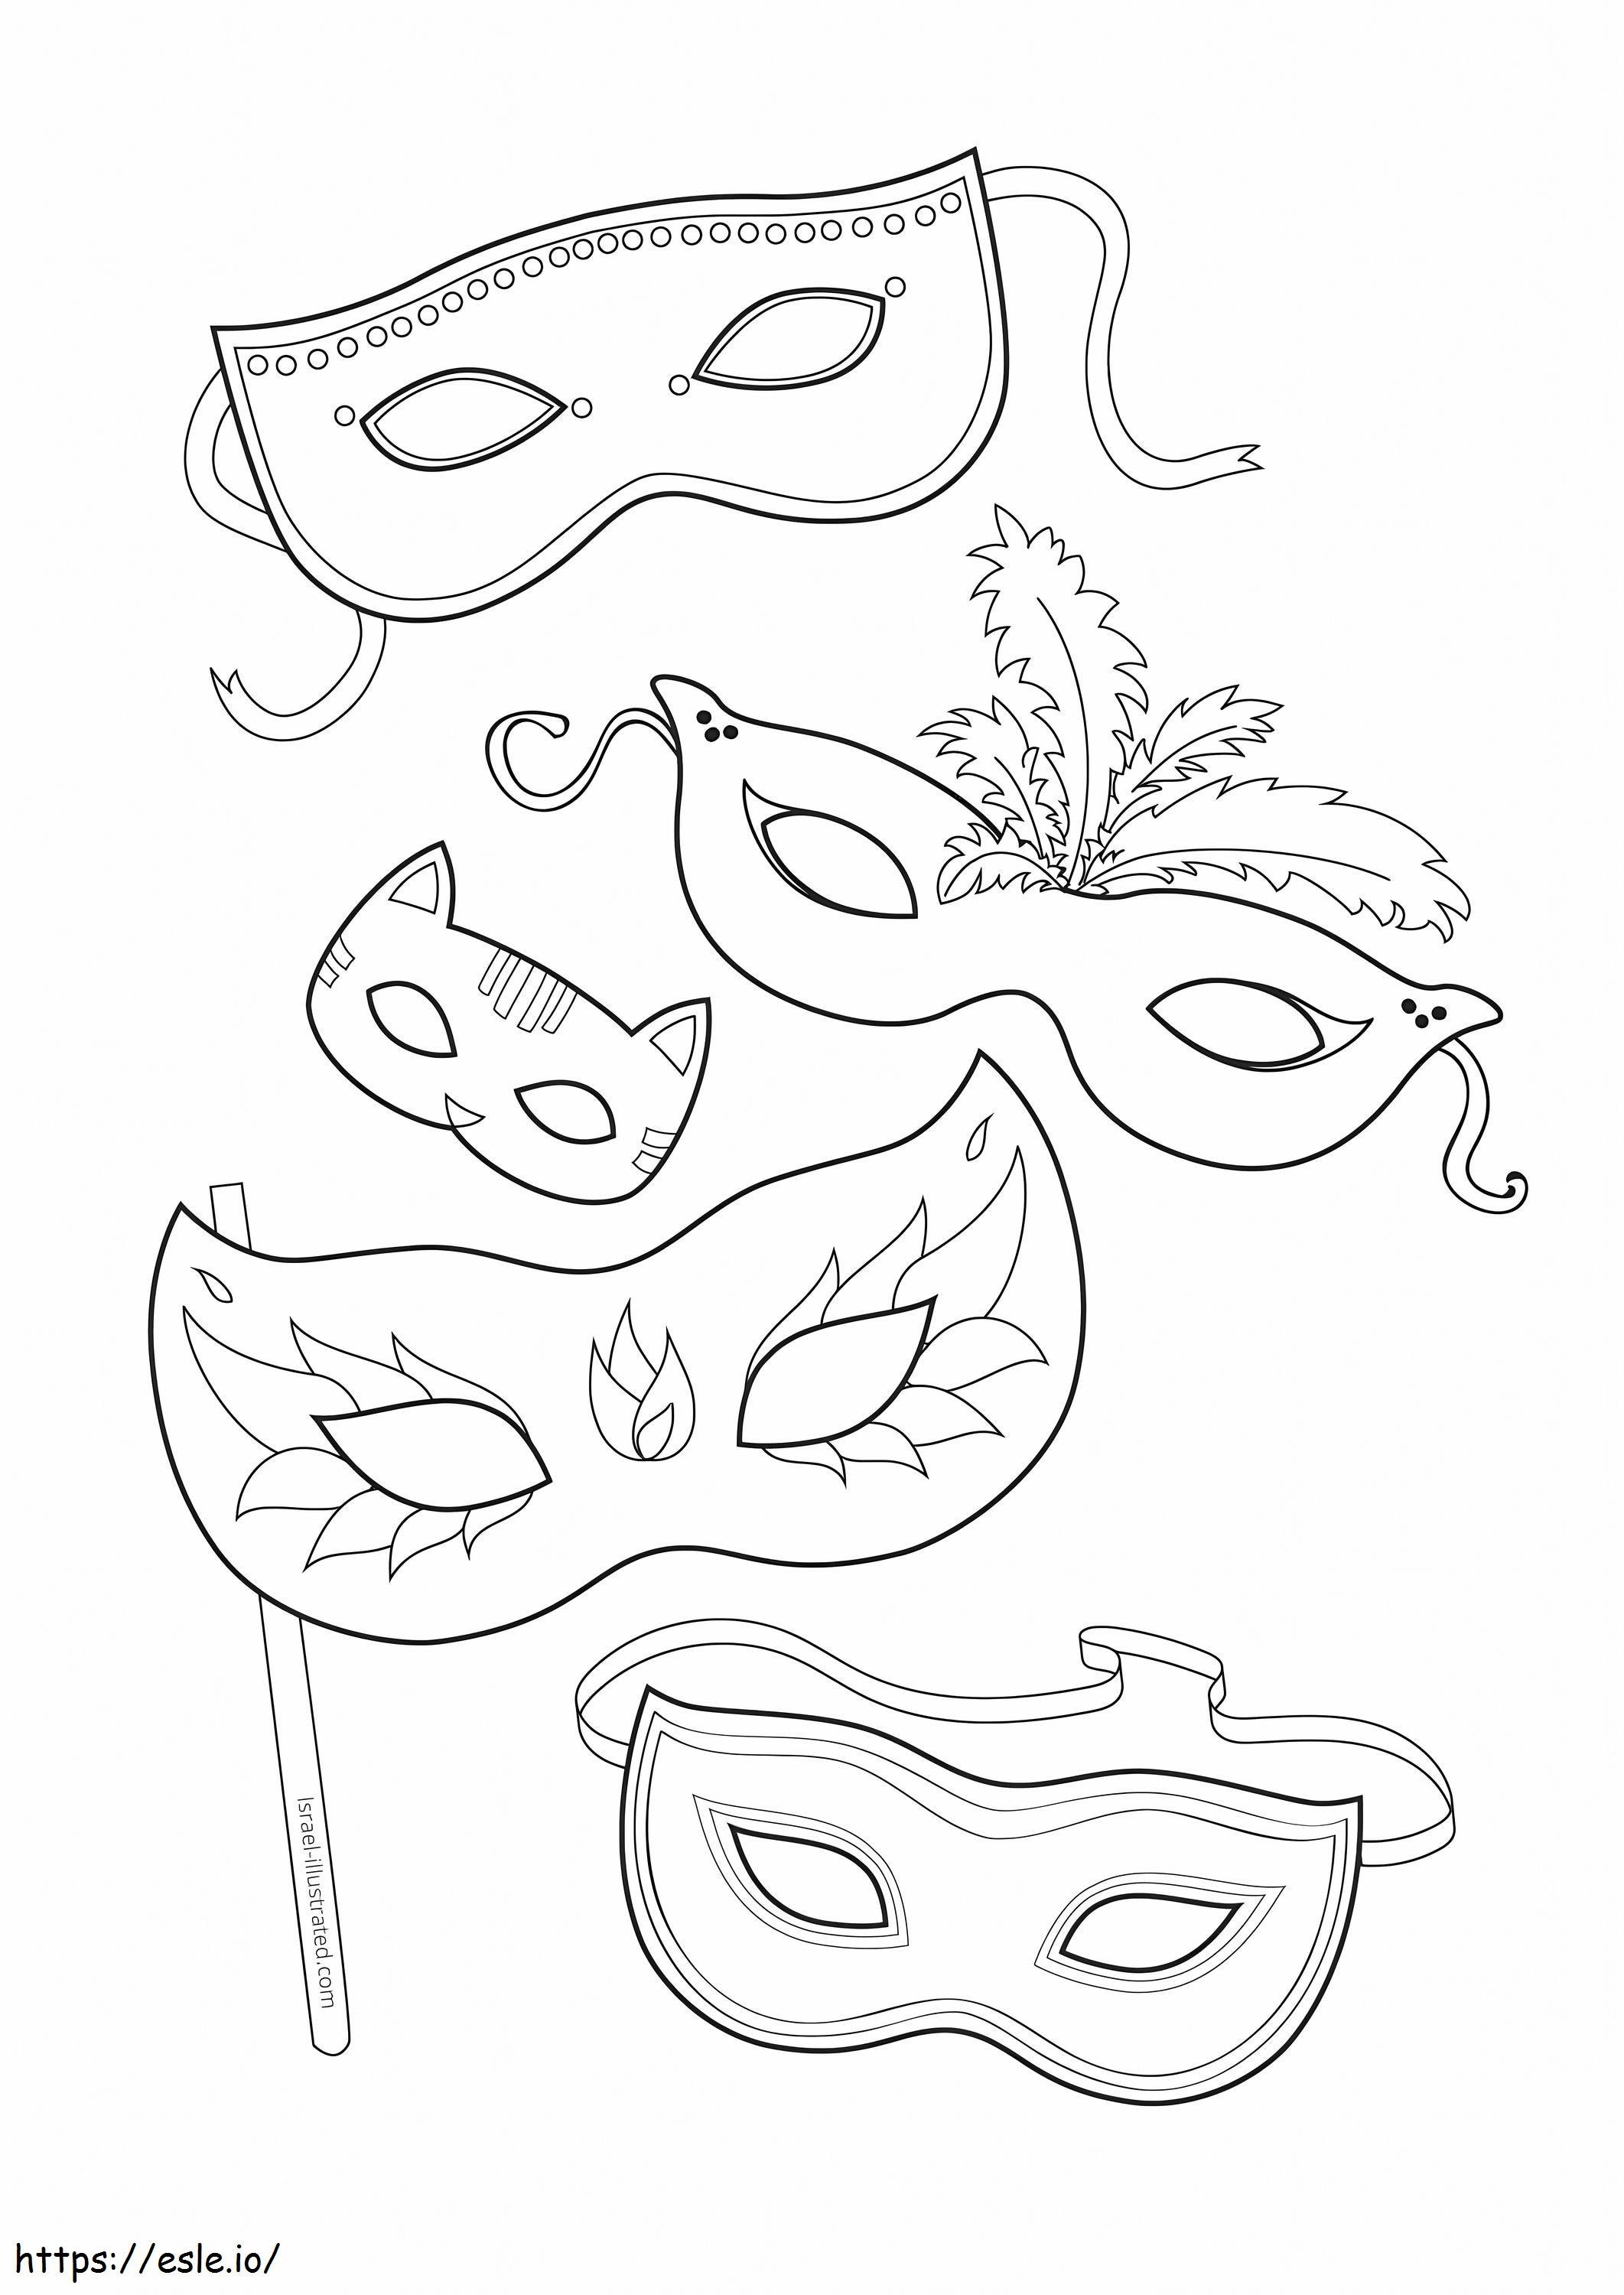 Coloriage Cinq Masques à imprimer dessin